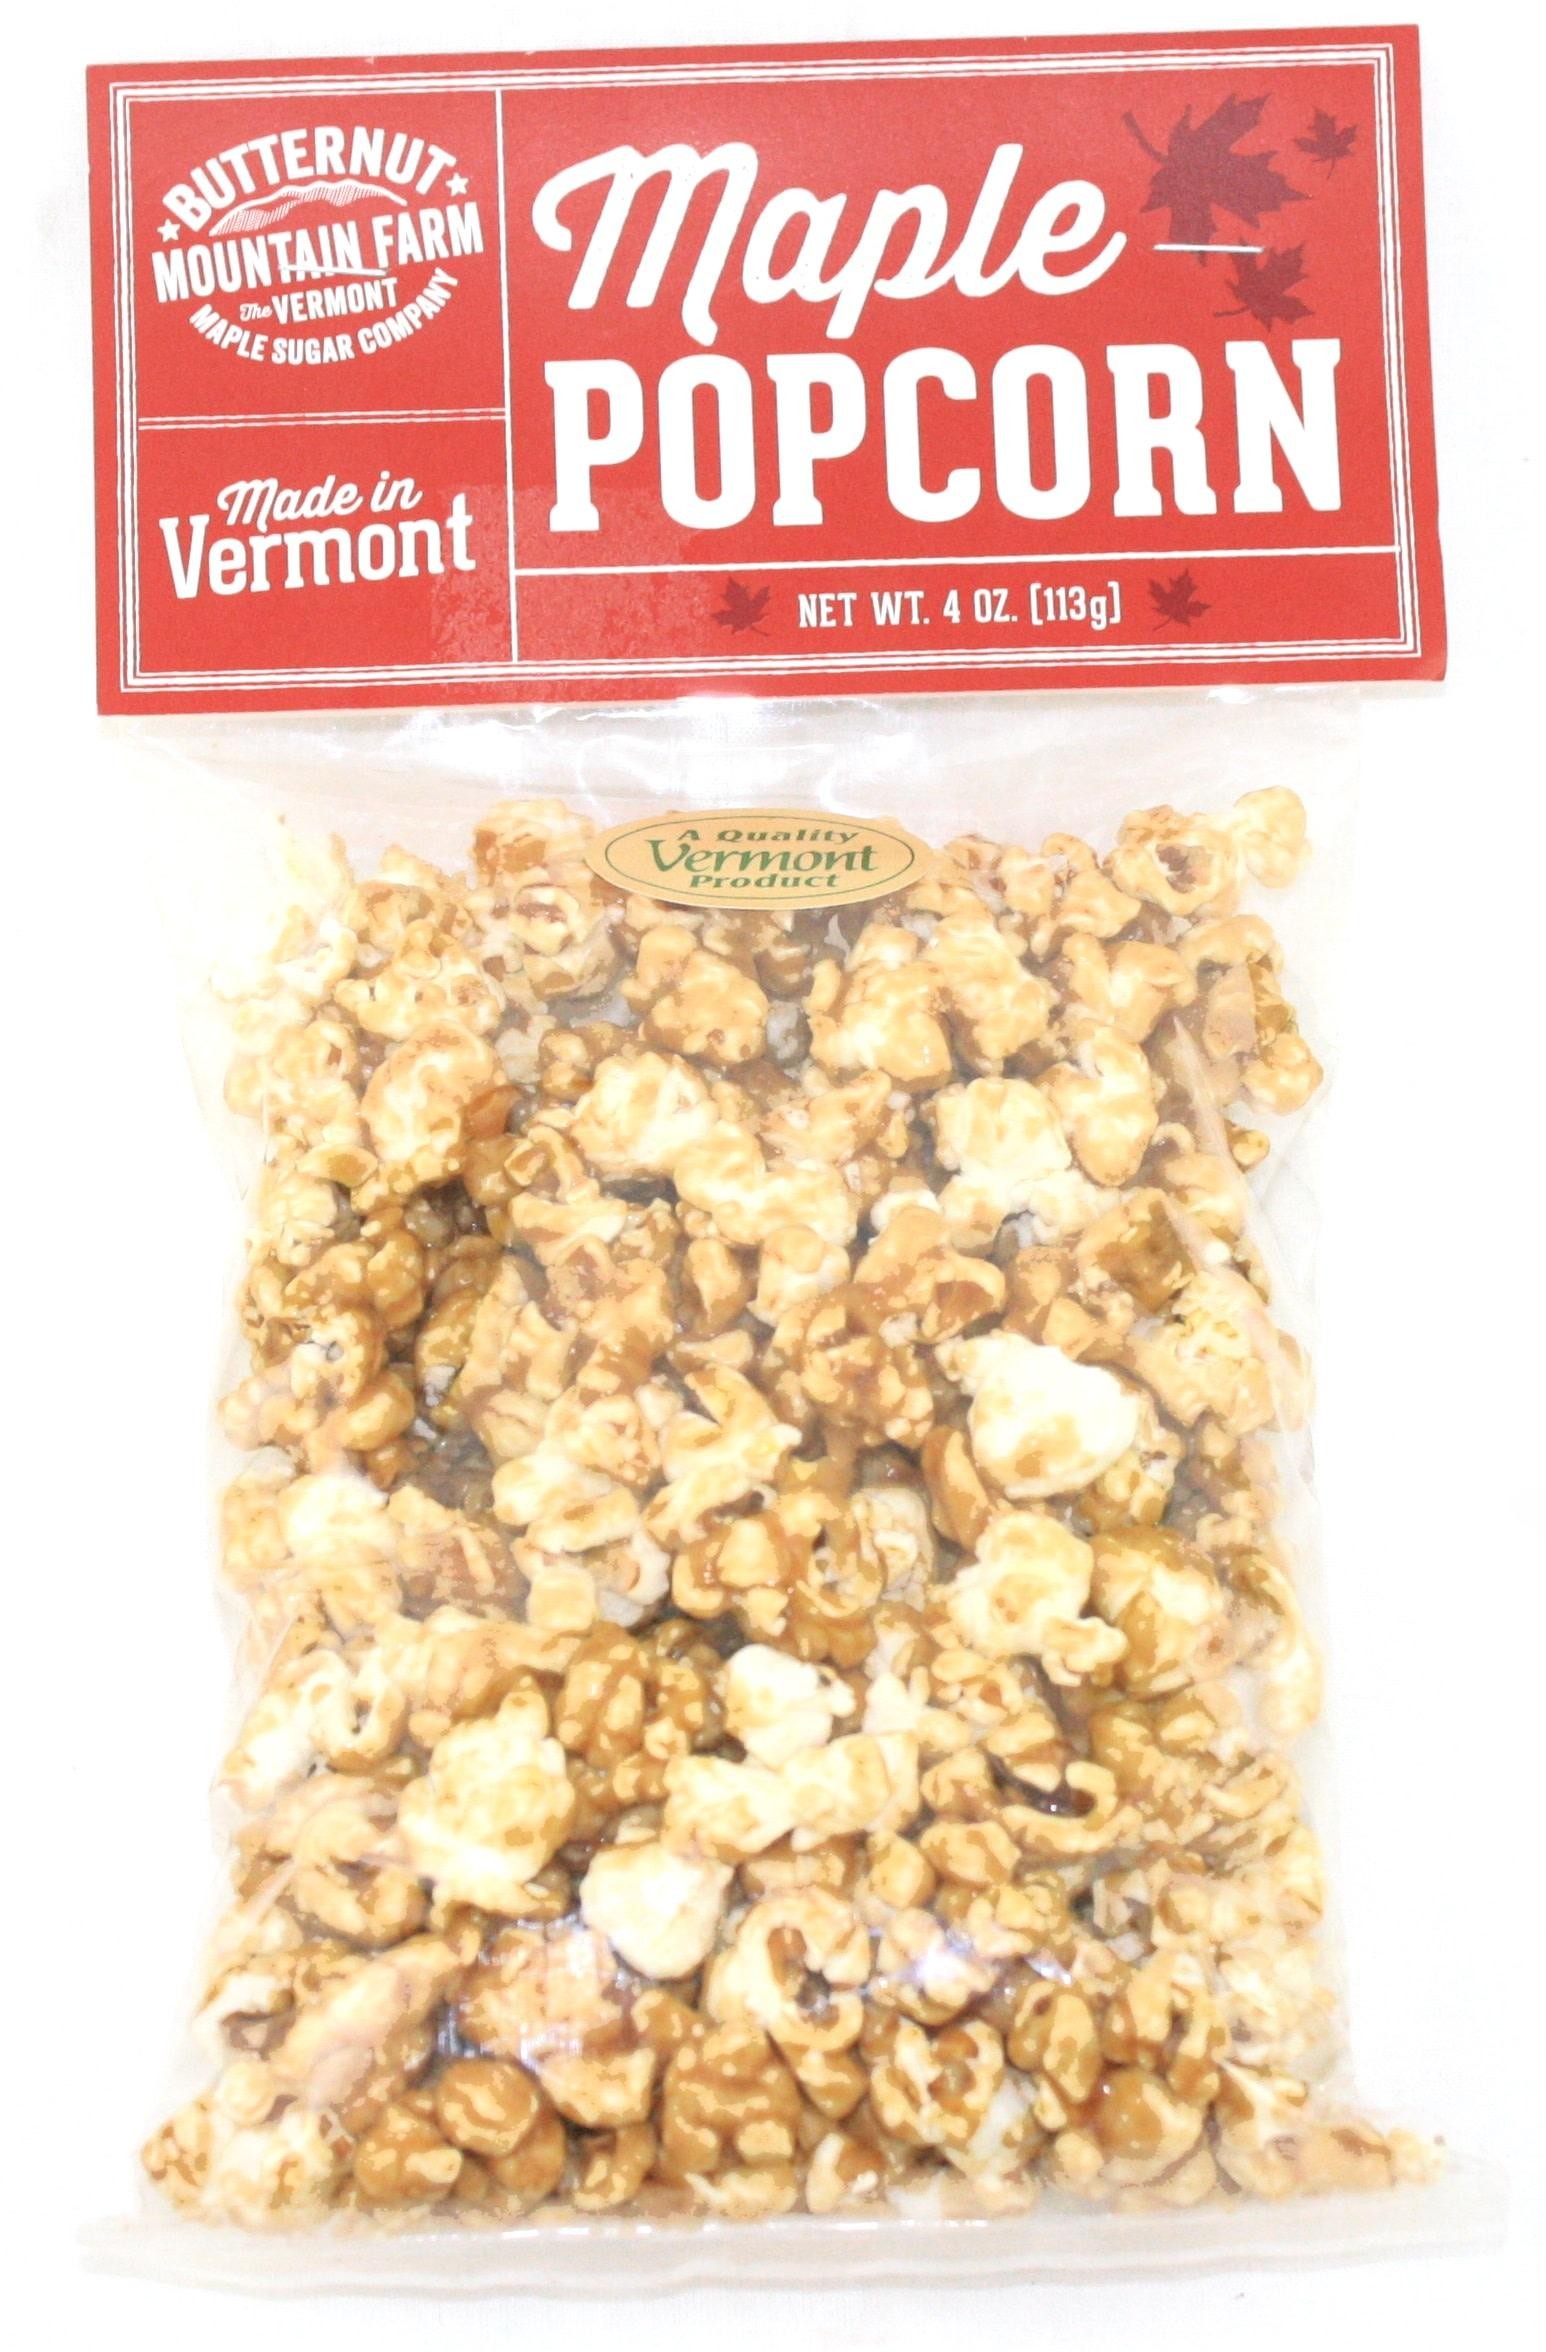 Butternut Mountain Farm Maple Popcorn - 4 oz